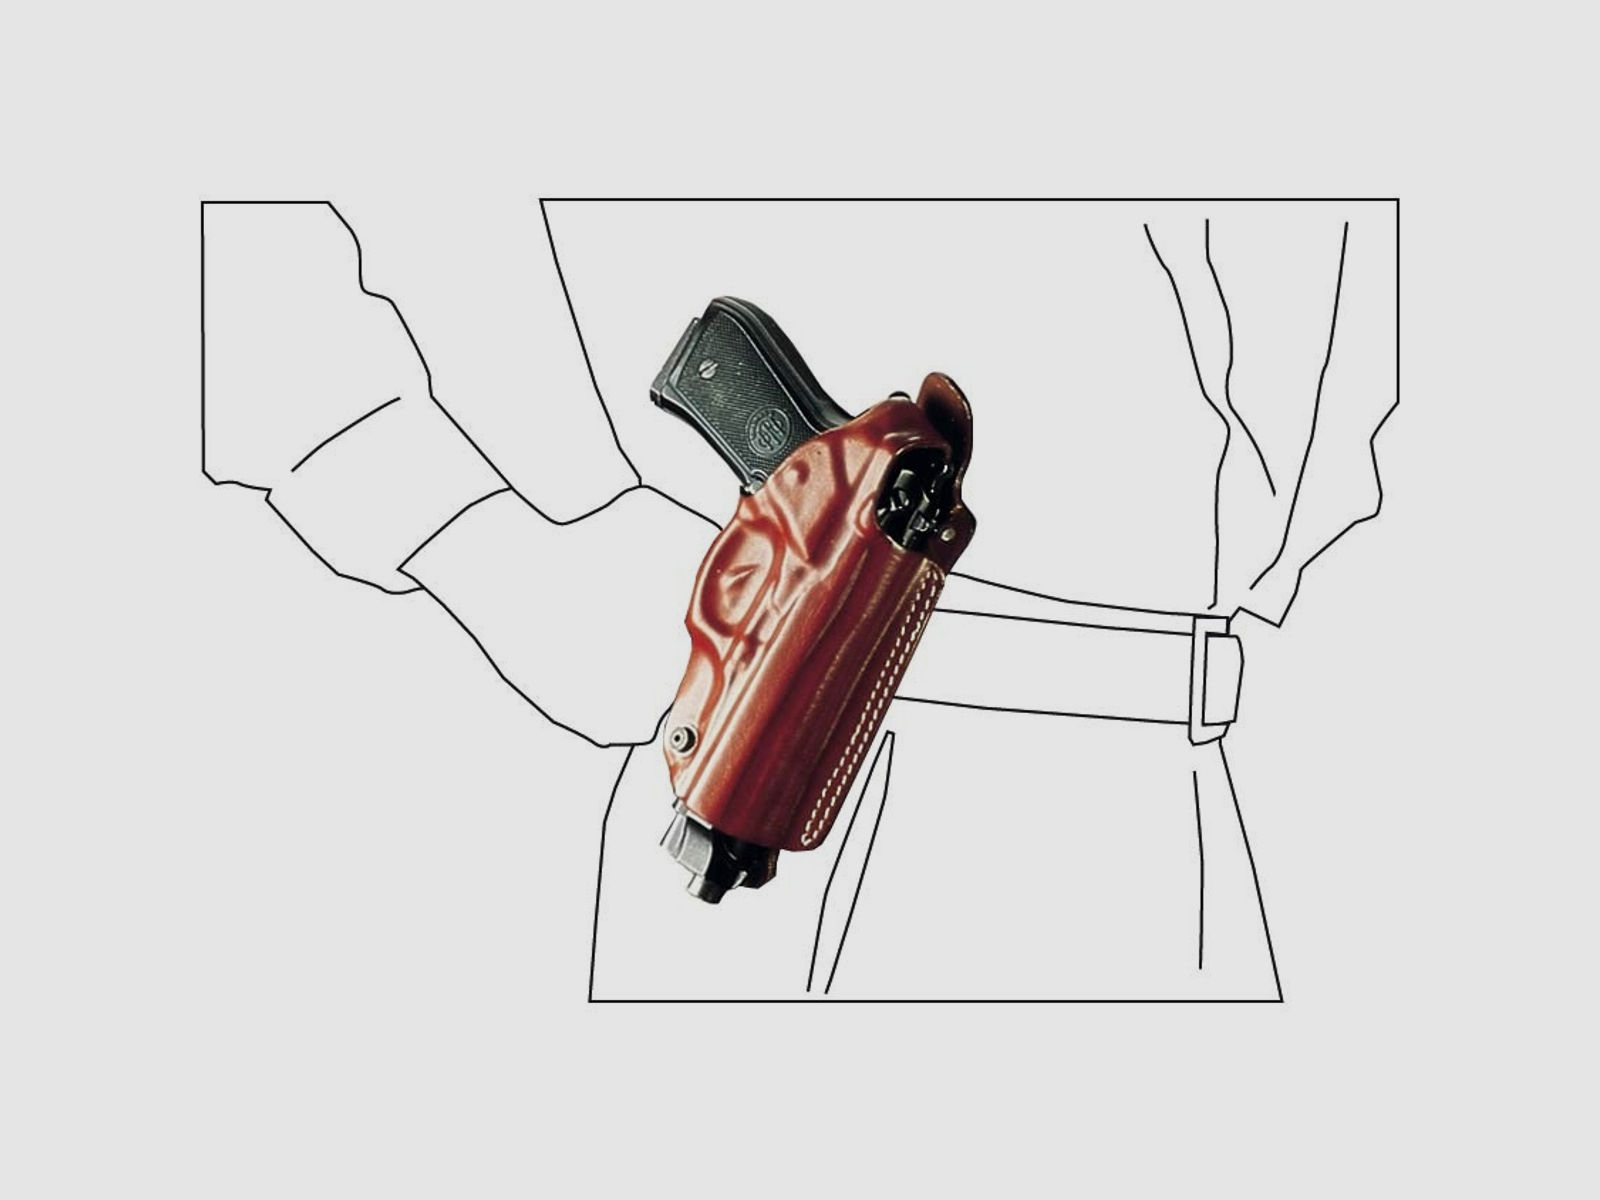 Mehrzweck-Schulterholster/Gürtelholster "Miami" Glock 42-Braun-Rechtshänder